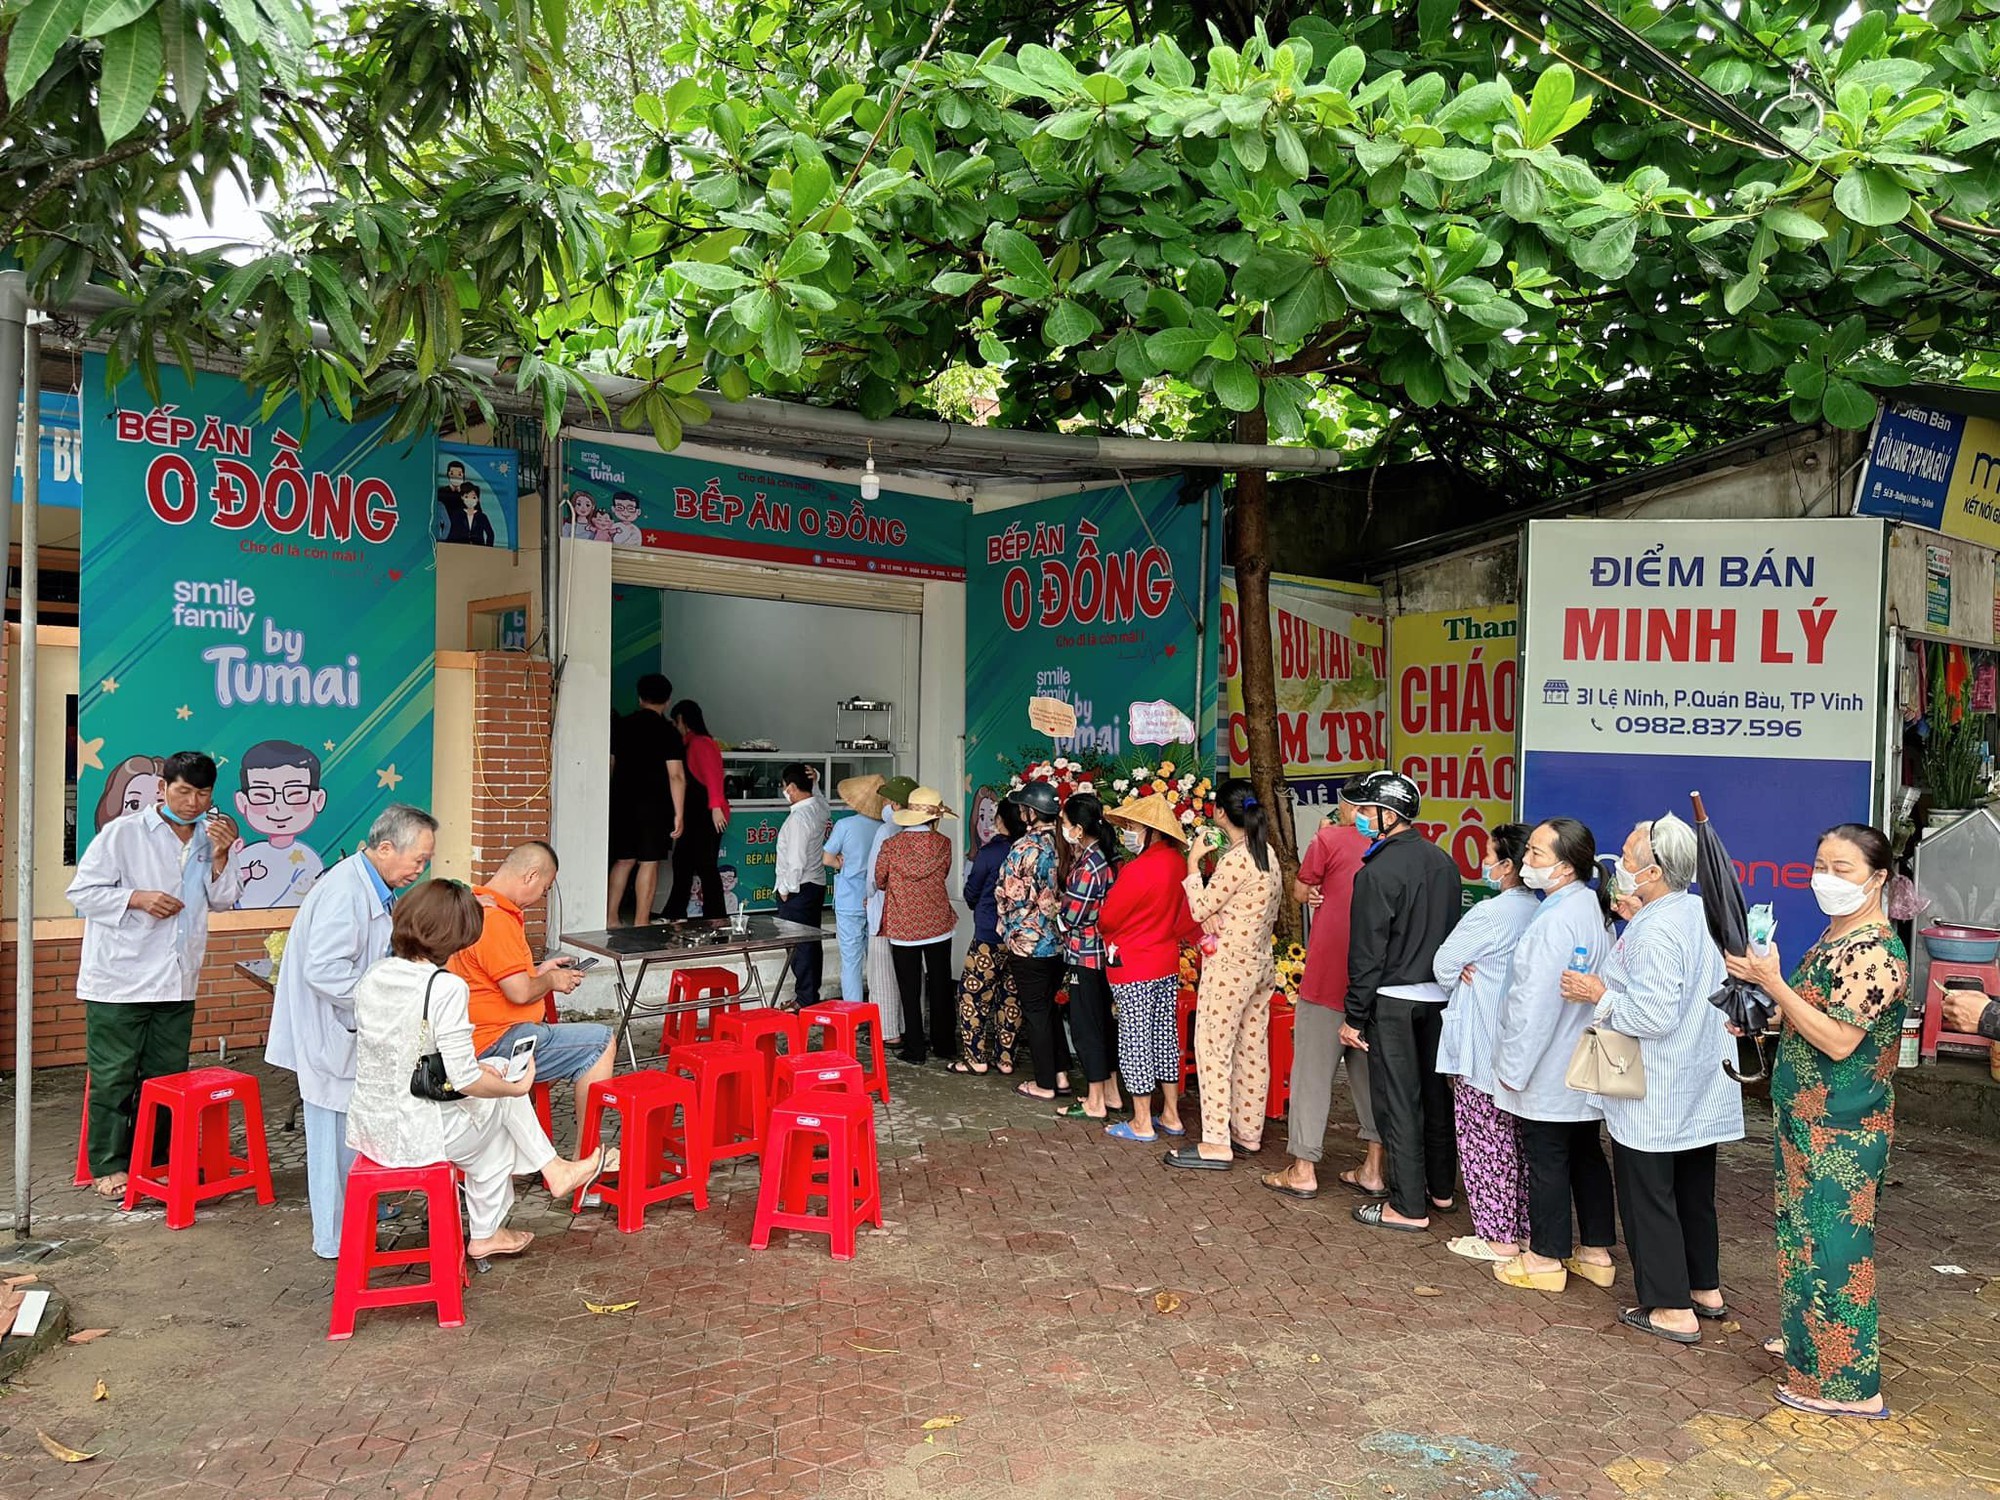 Vợ chồng hot TikToker xứ Nghệ chi 70 triệu mỗi tháng mở “Bếp ăn 0 đồng” giúp đỡ bệnh nhân có hoàn cảnh khó khăn- Ảnh 1.